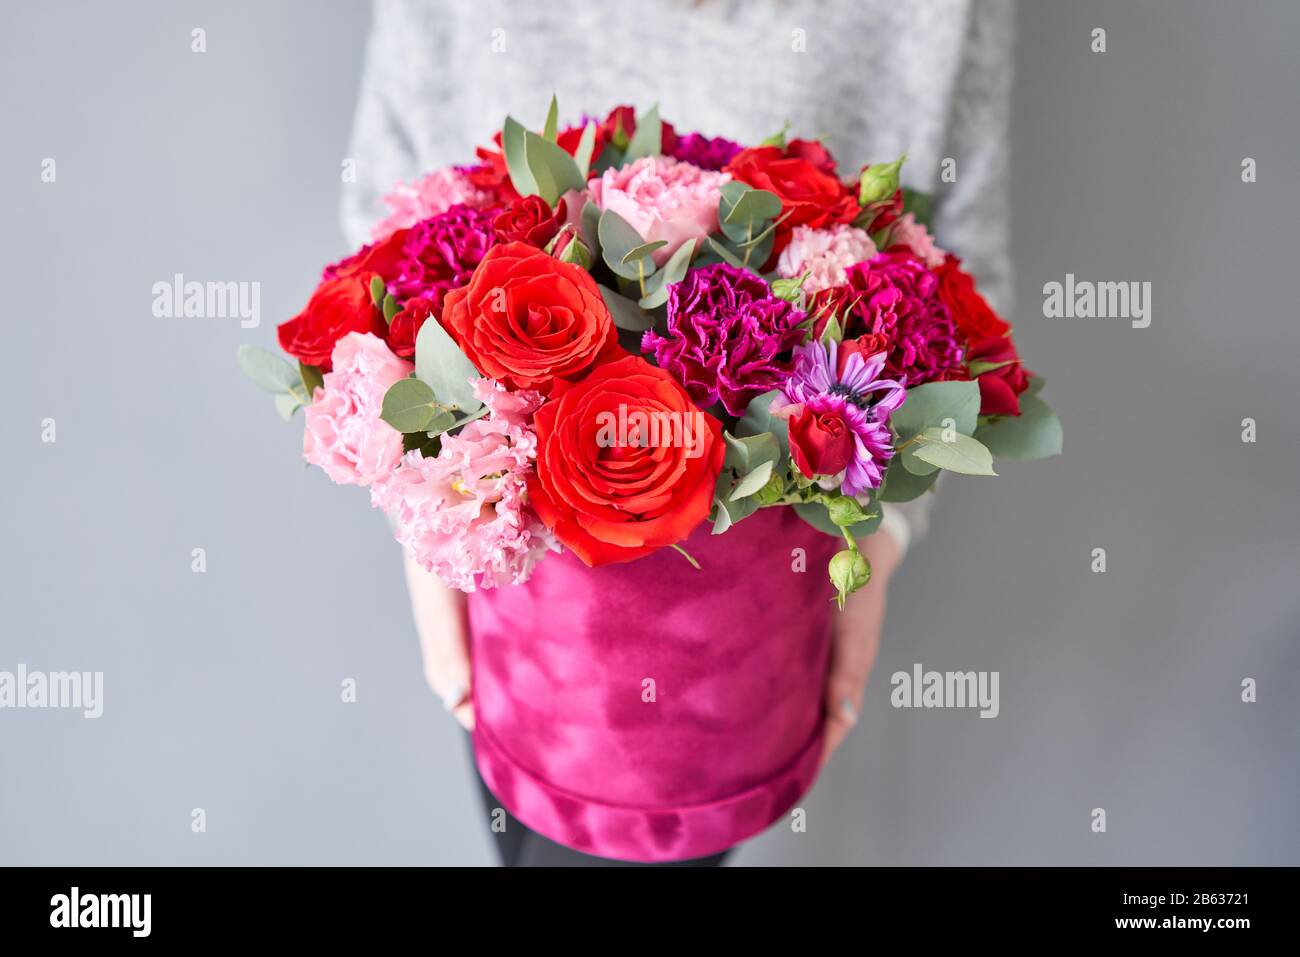 Bouquet de fleurs rouges et violettes dans une boîte ronde en velours. Boutique européenne de fleurs. Bouquet de belles fleurs mixtes dans la main de la femme. Banque D'Images